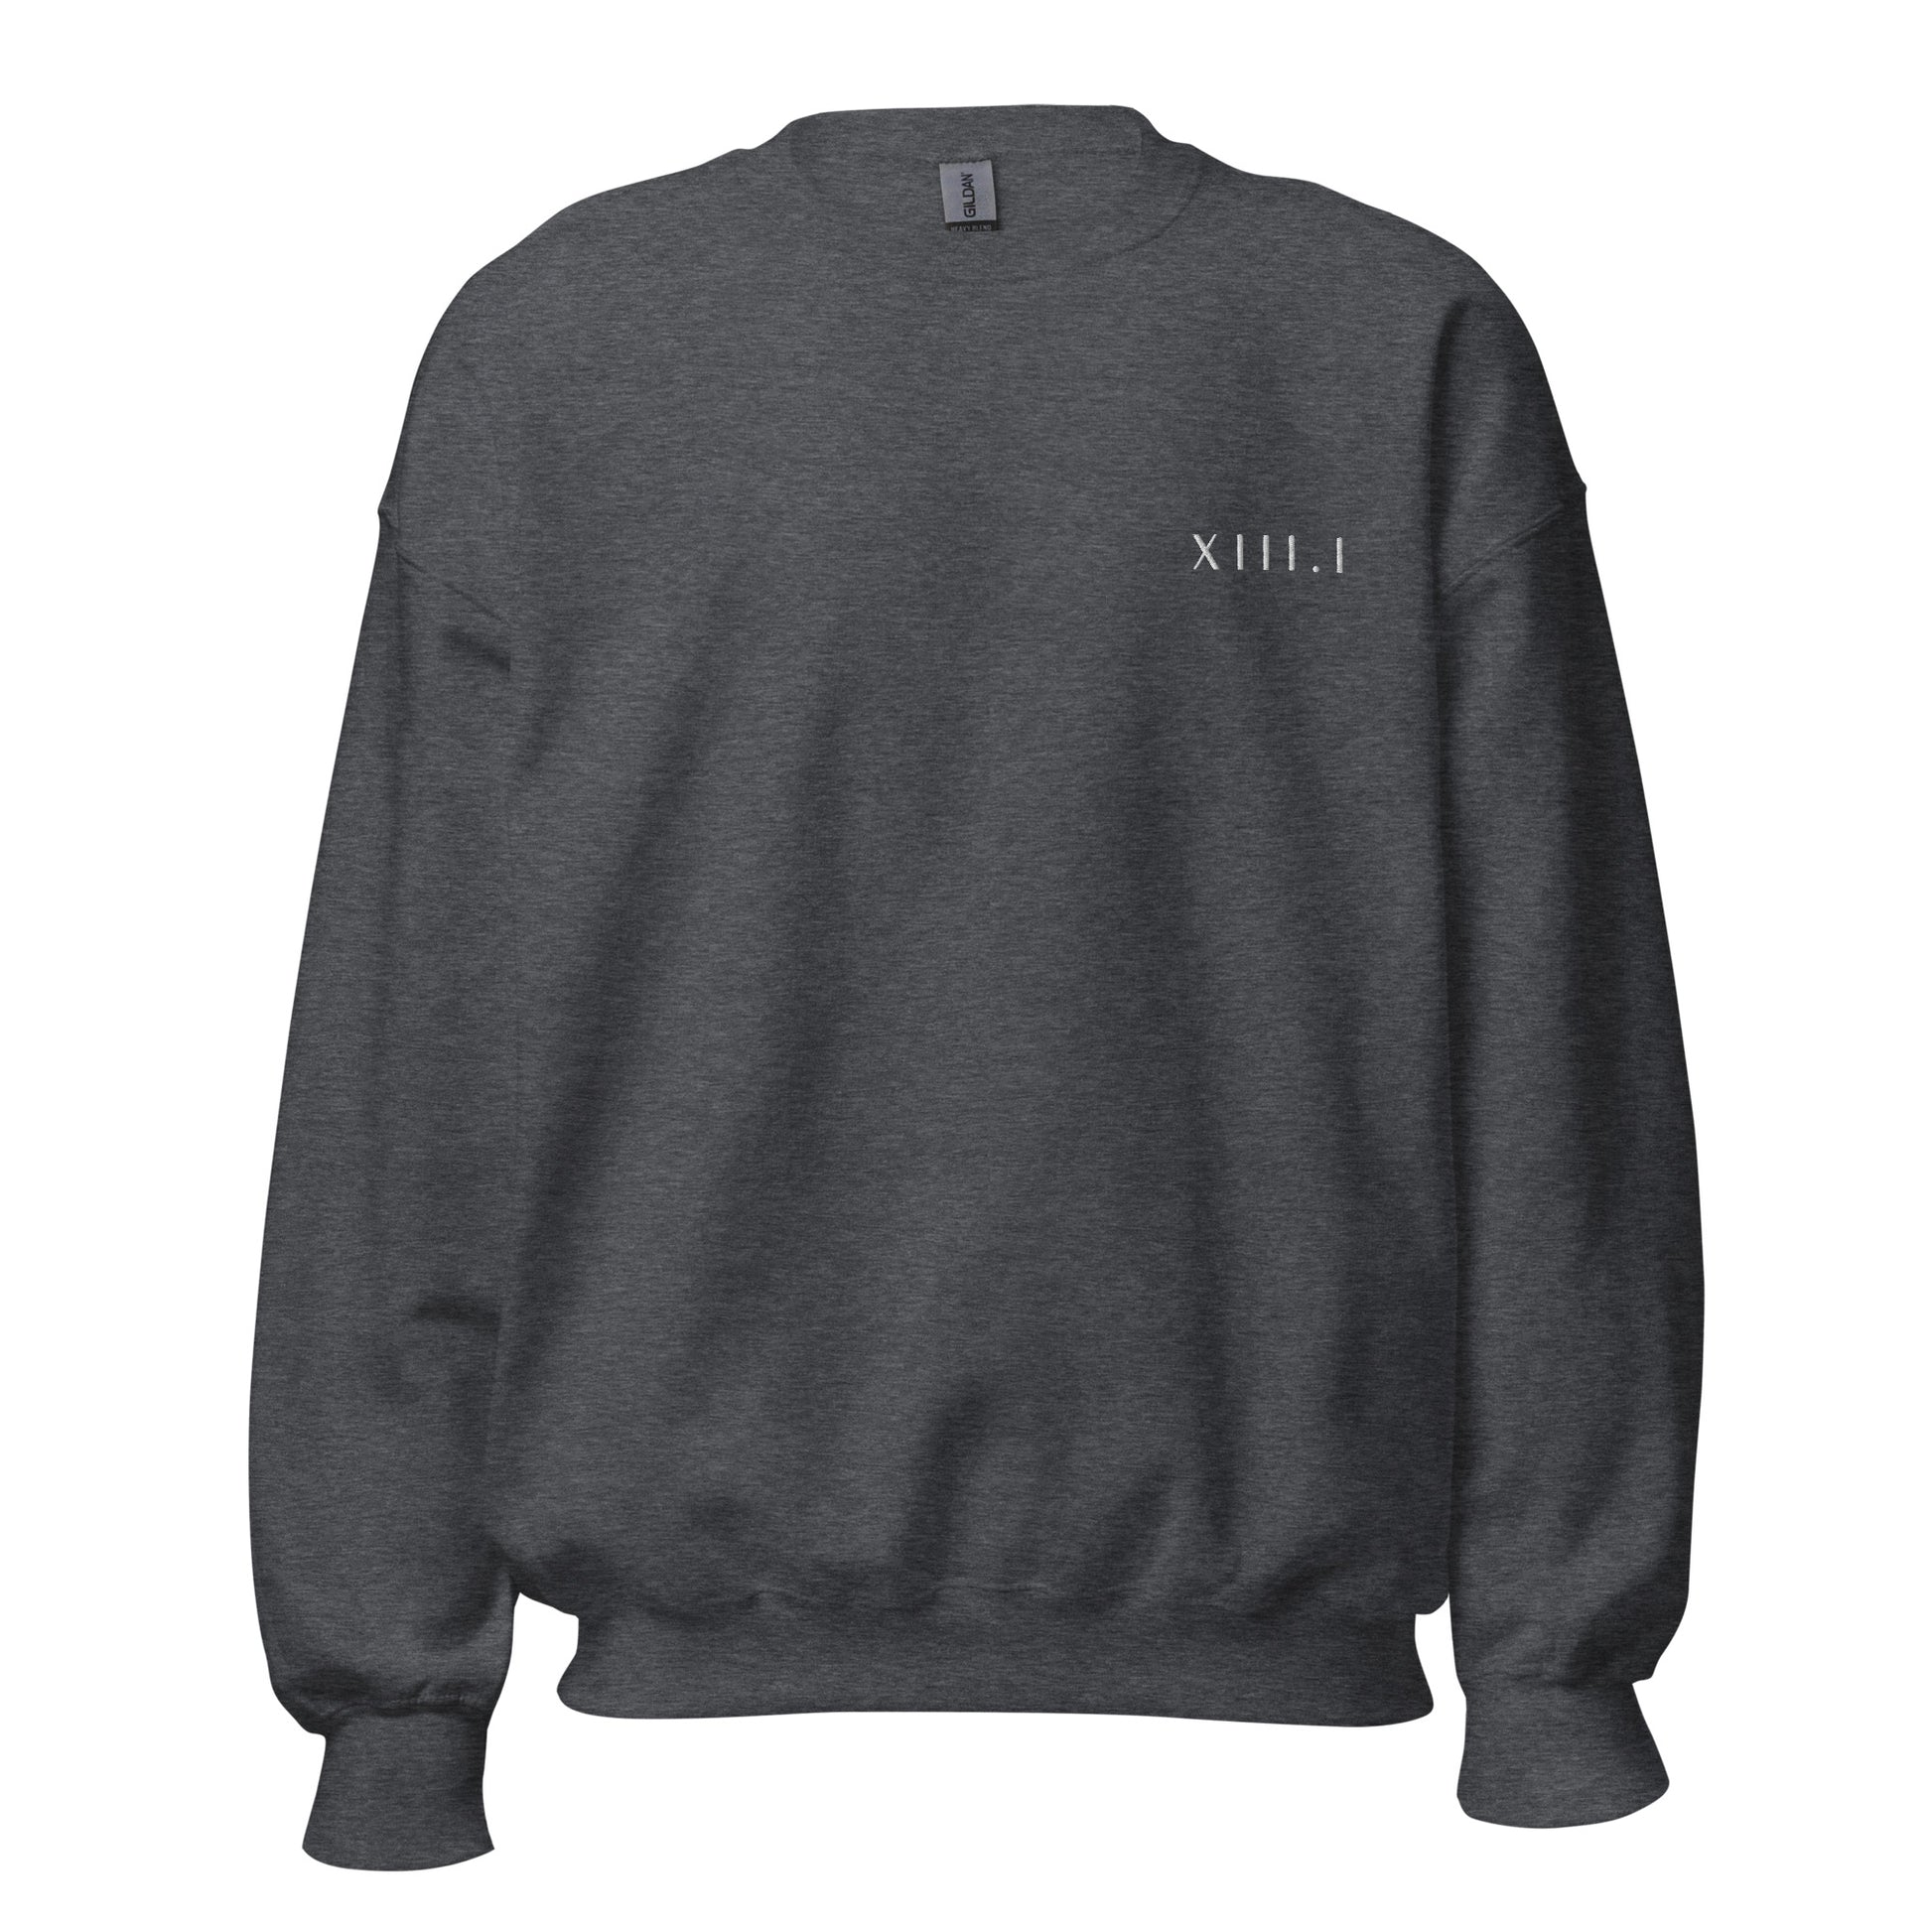 dark grey unisex sweatshirt with XIII.I 13.1 half marathon in roman numerals embroidered in white writing